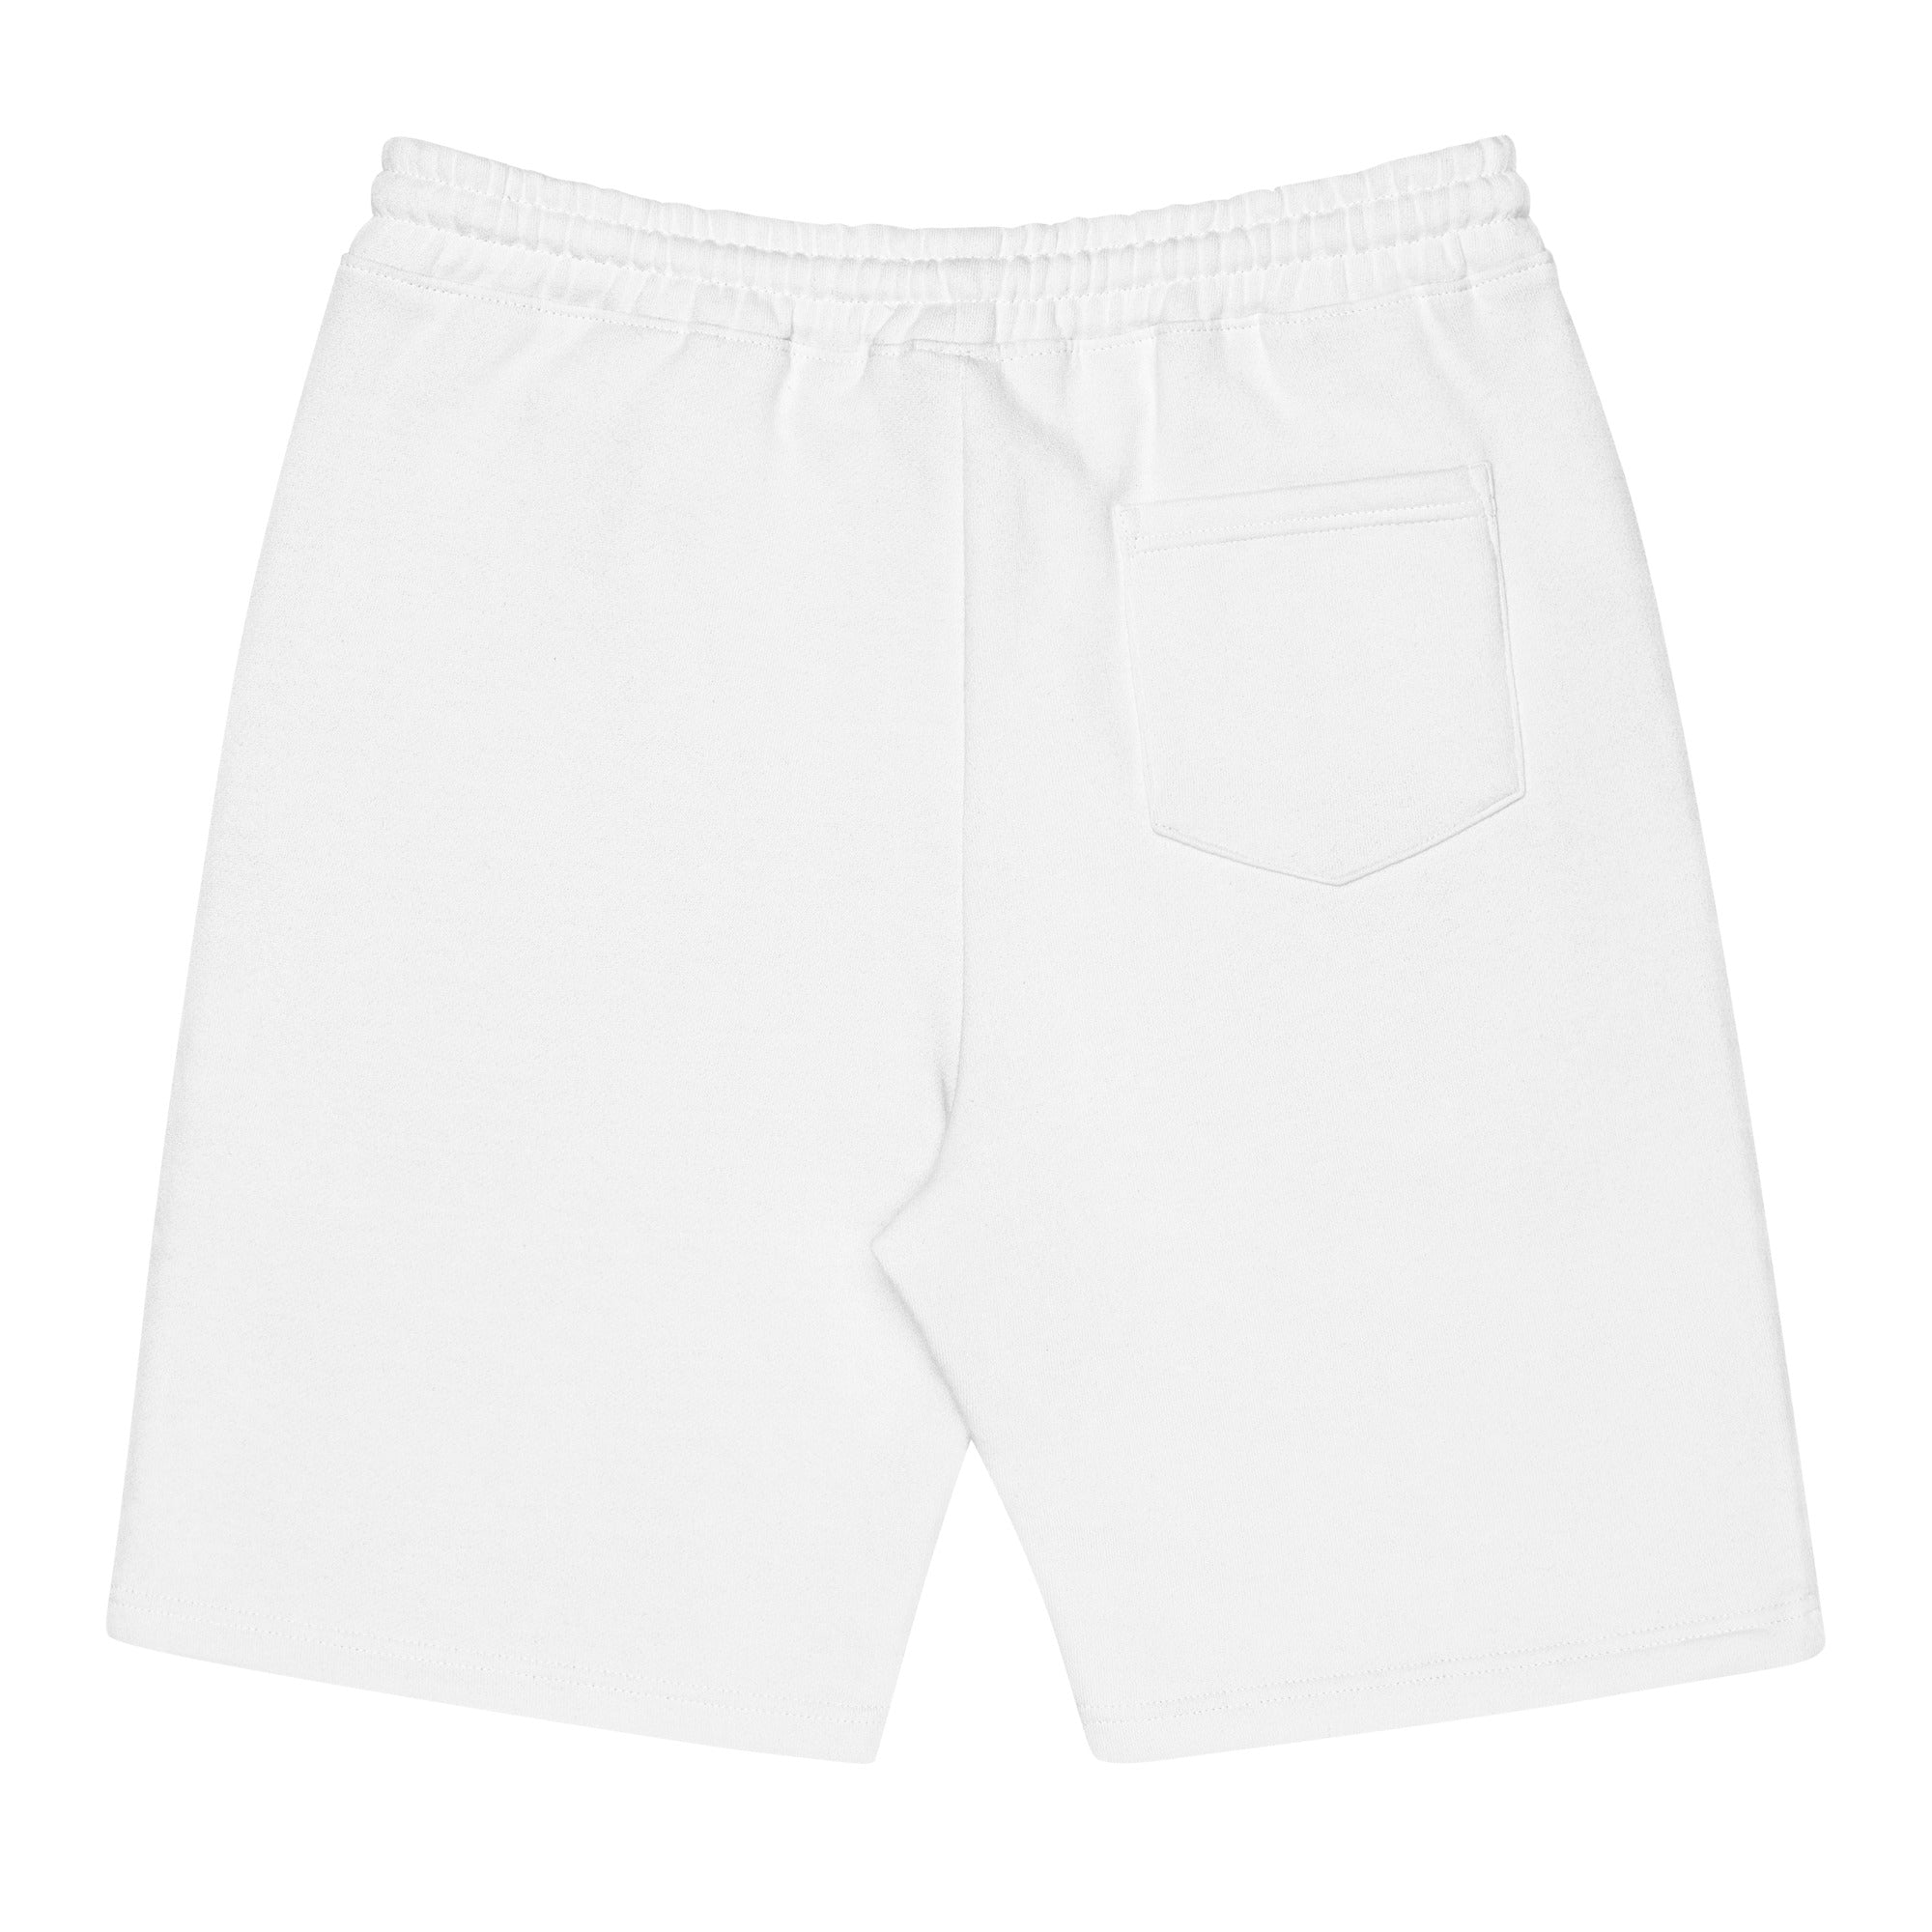 Men's Skidoosh fleece shorts